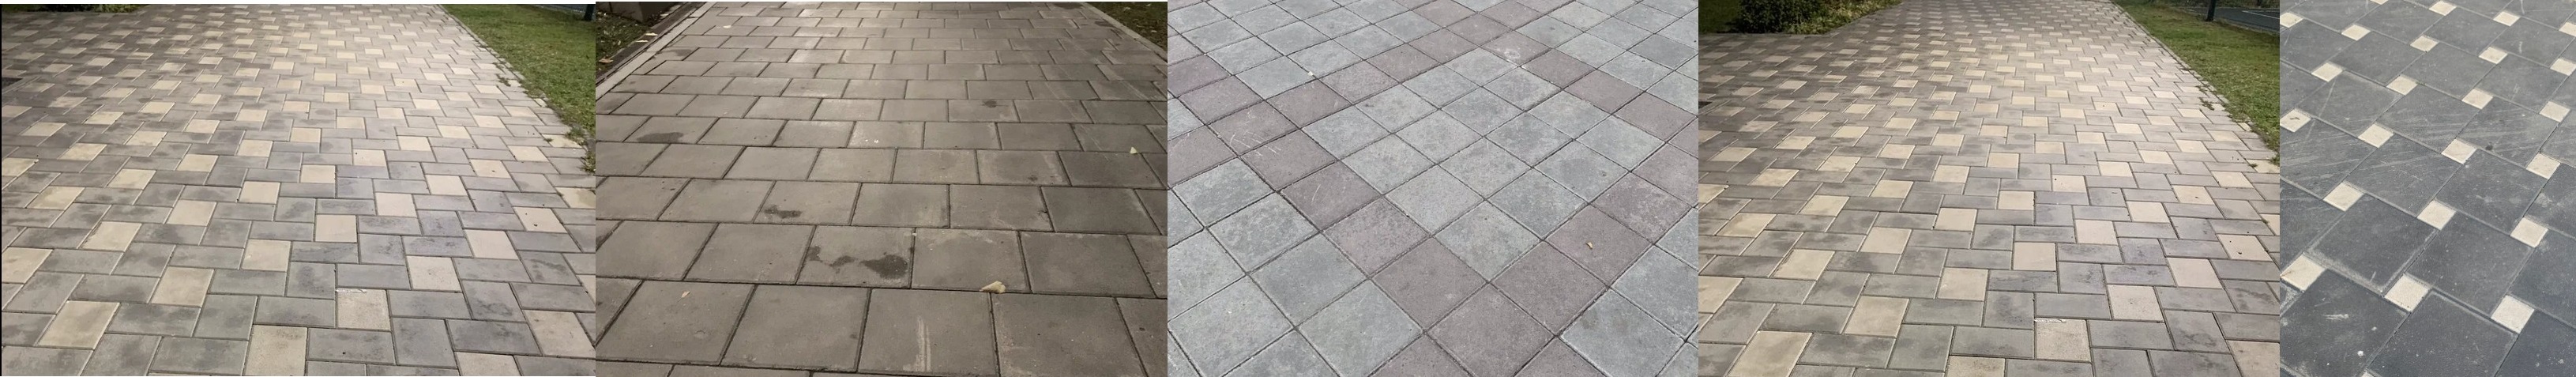 Тротуарная плитка 3К6 размер 300х300х60